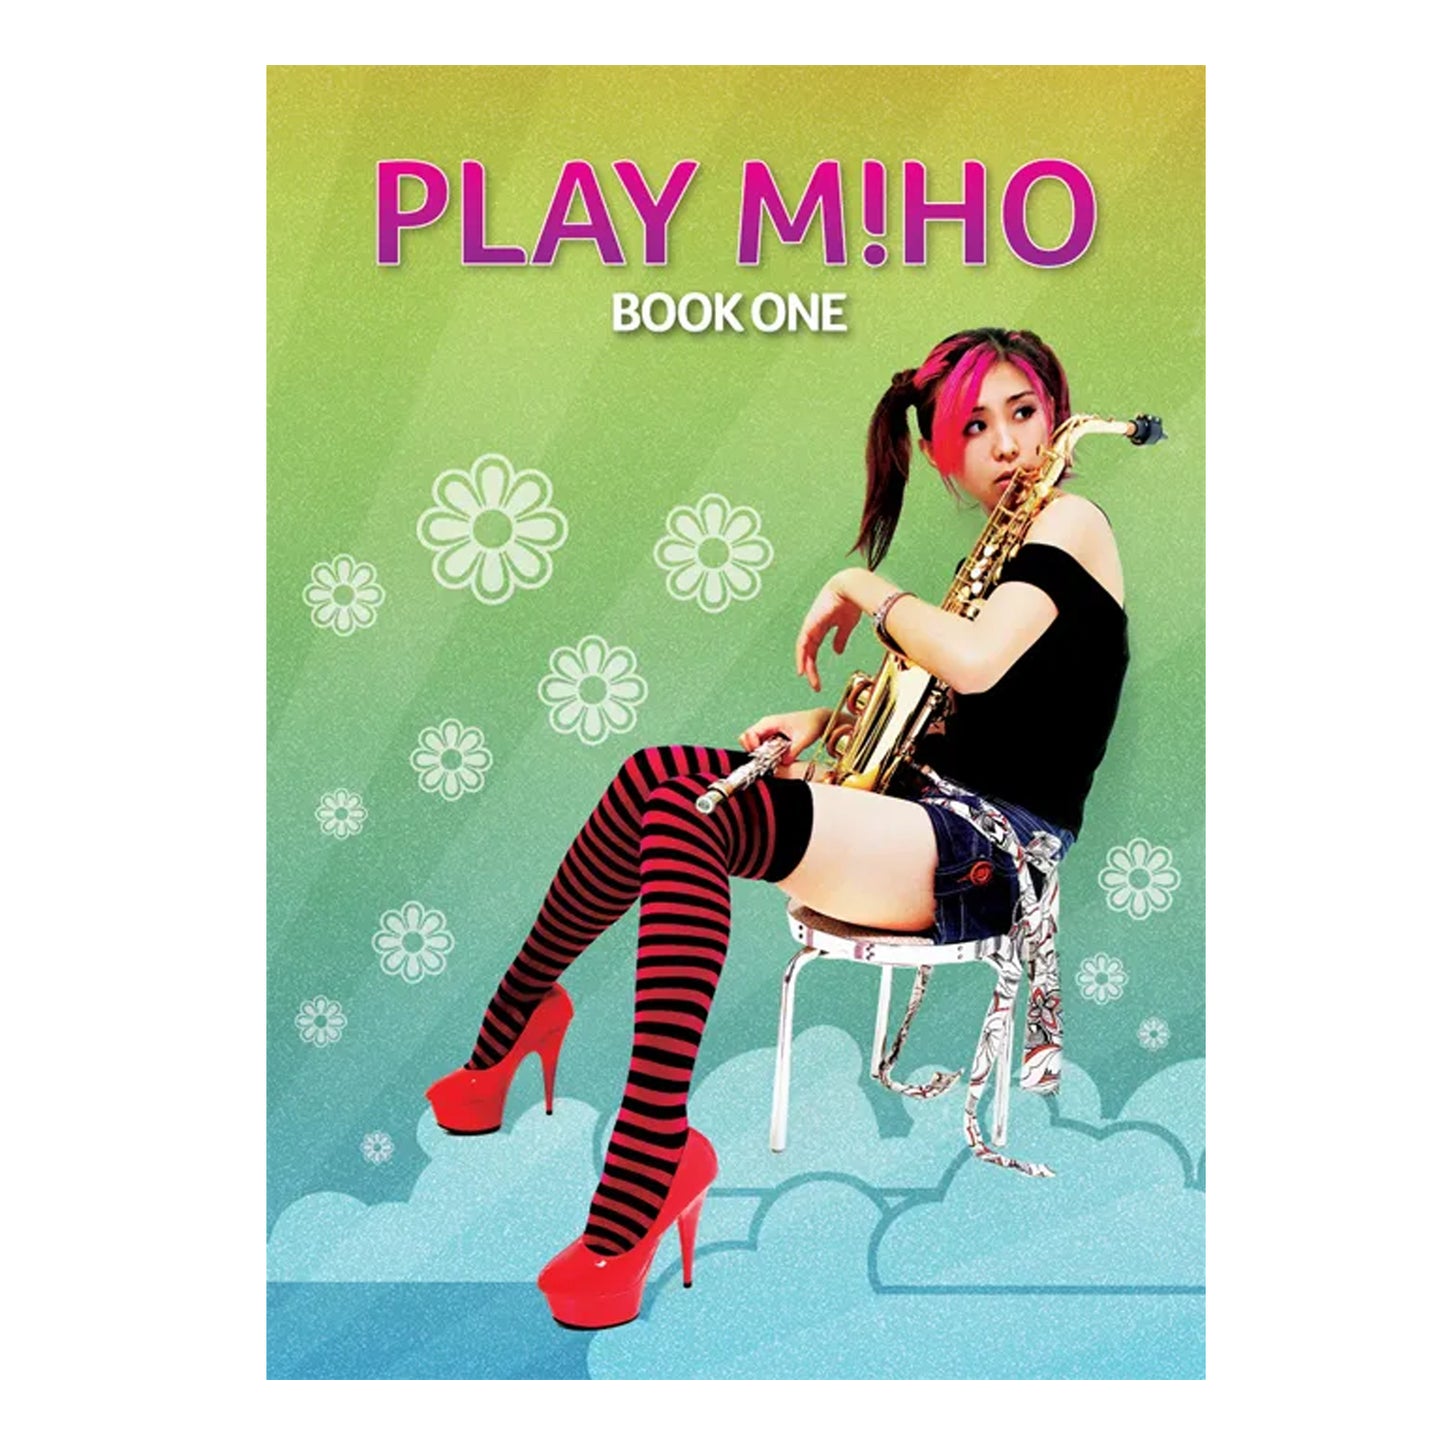 Play Miho